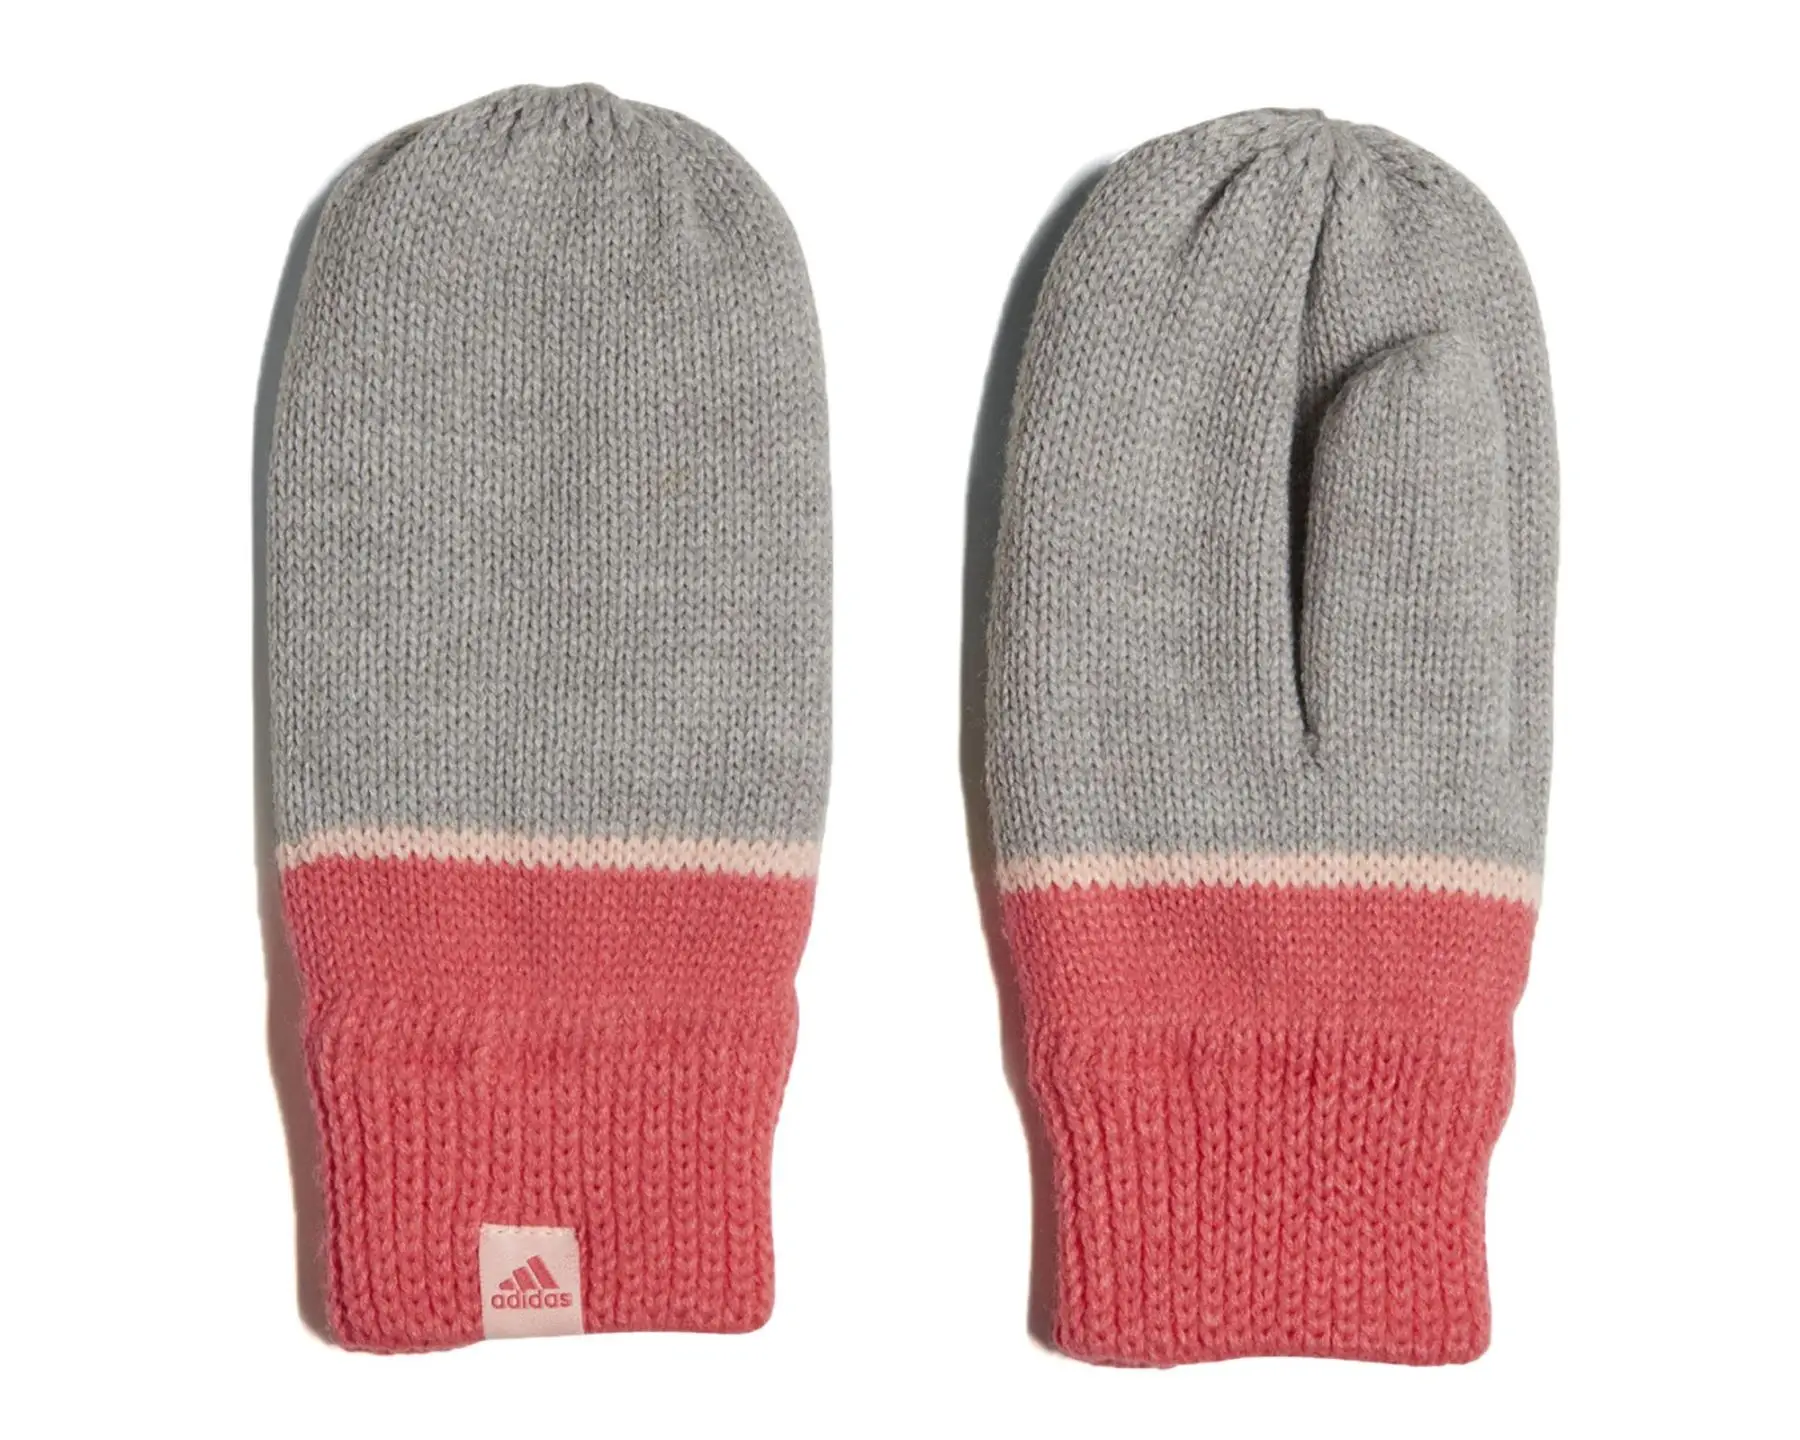 Adidas Original Kids Stripy Gloves Warm Winter Gloves Children Stretch Mittens Boy Girl Infant Accessories